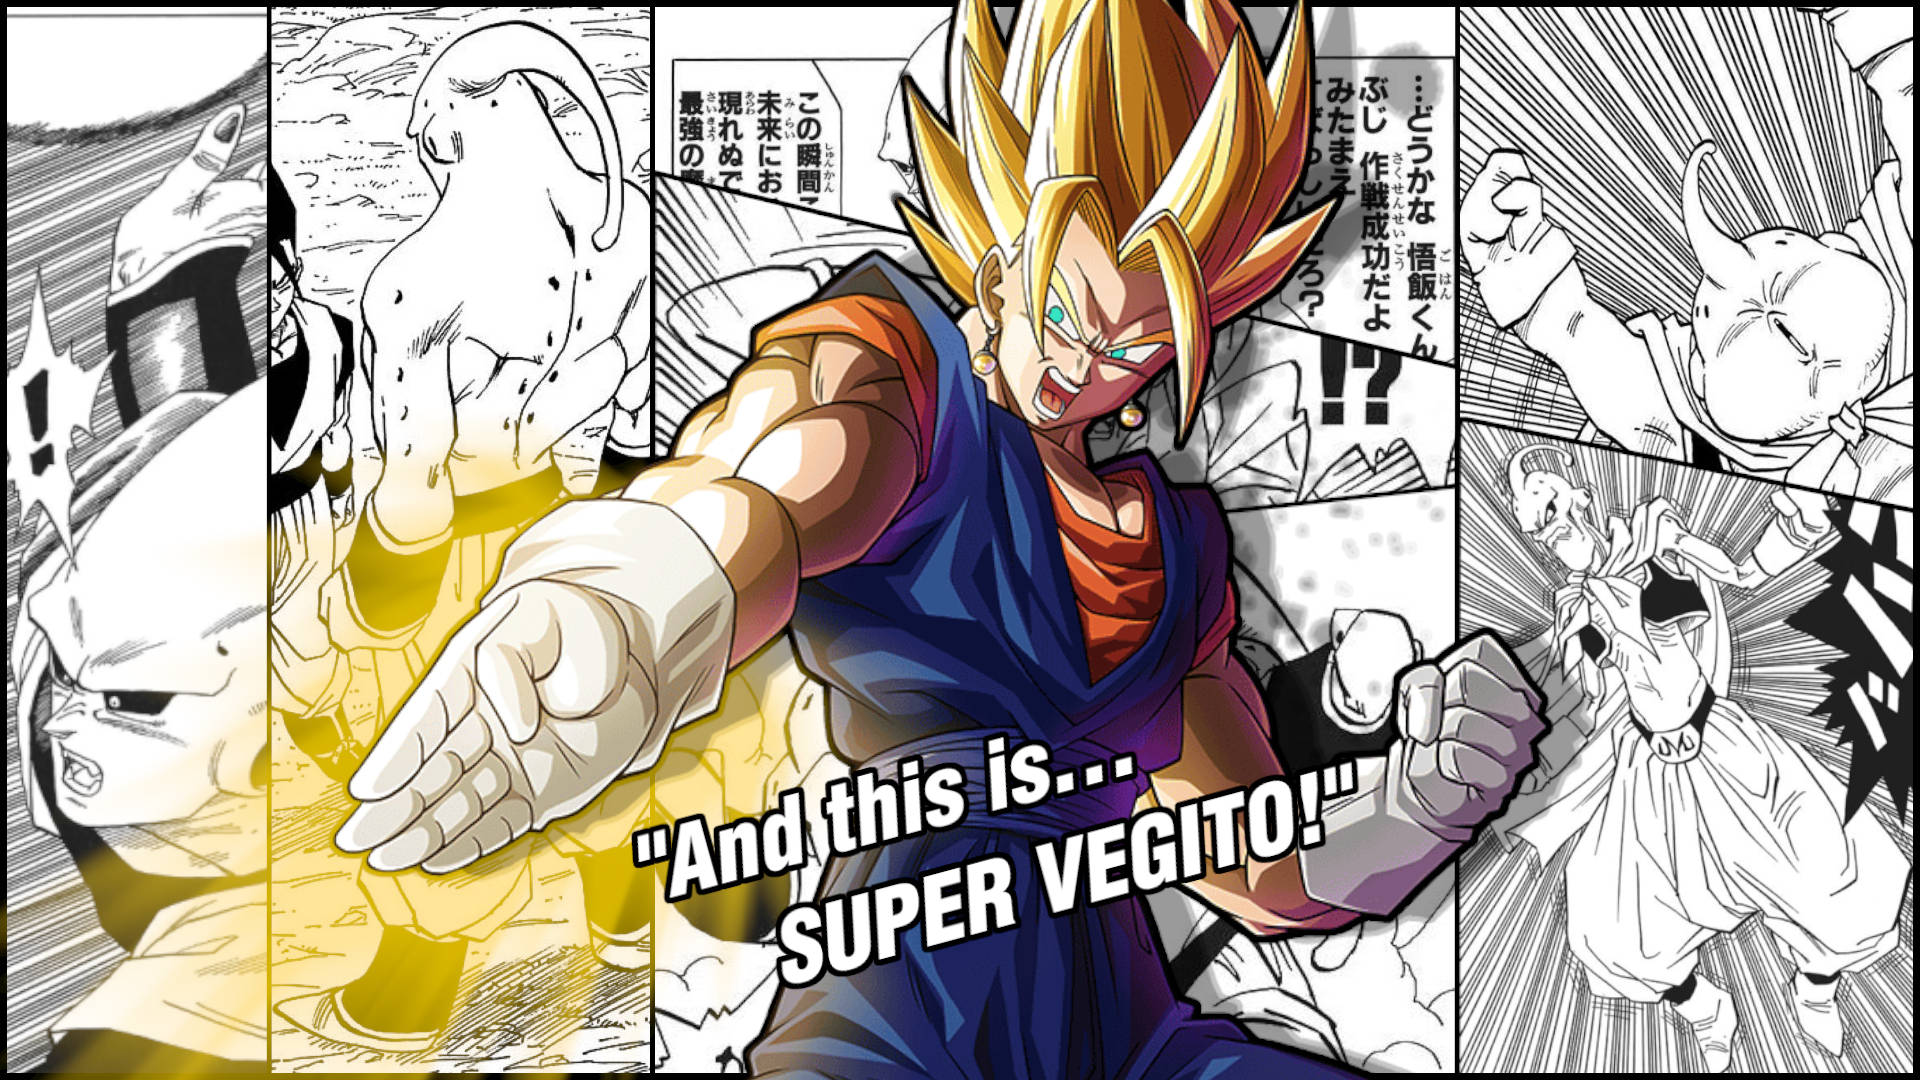 Super Vegito Manga Panel